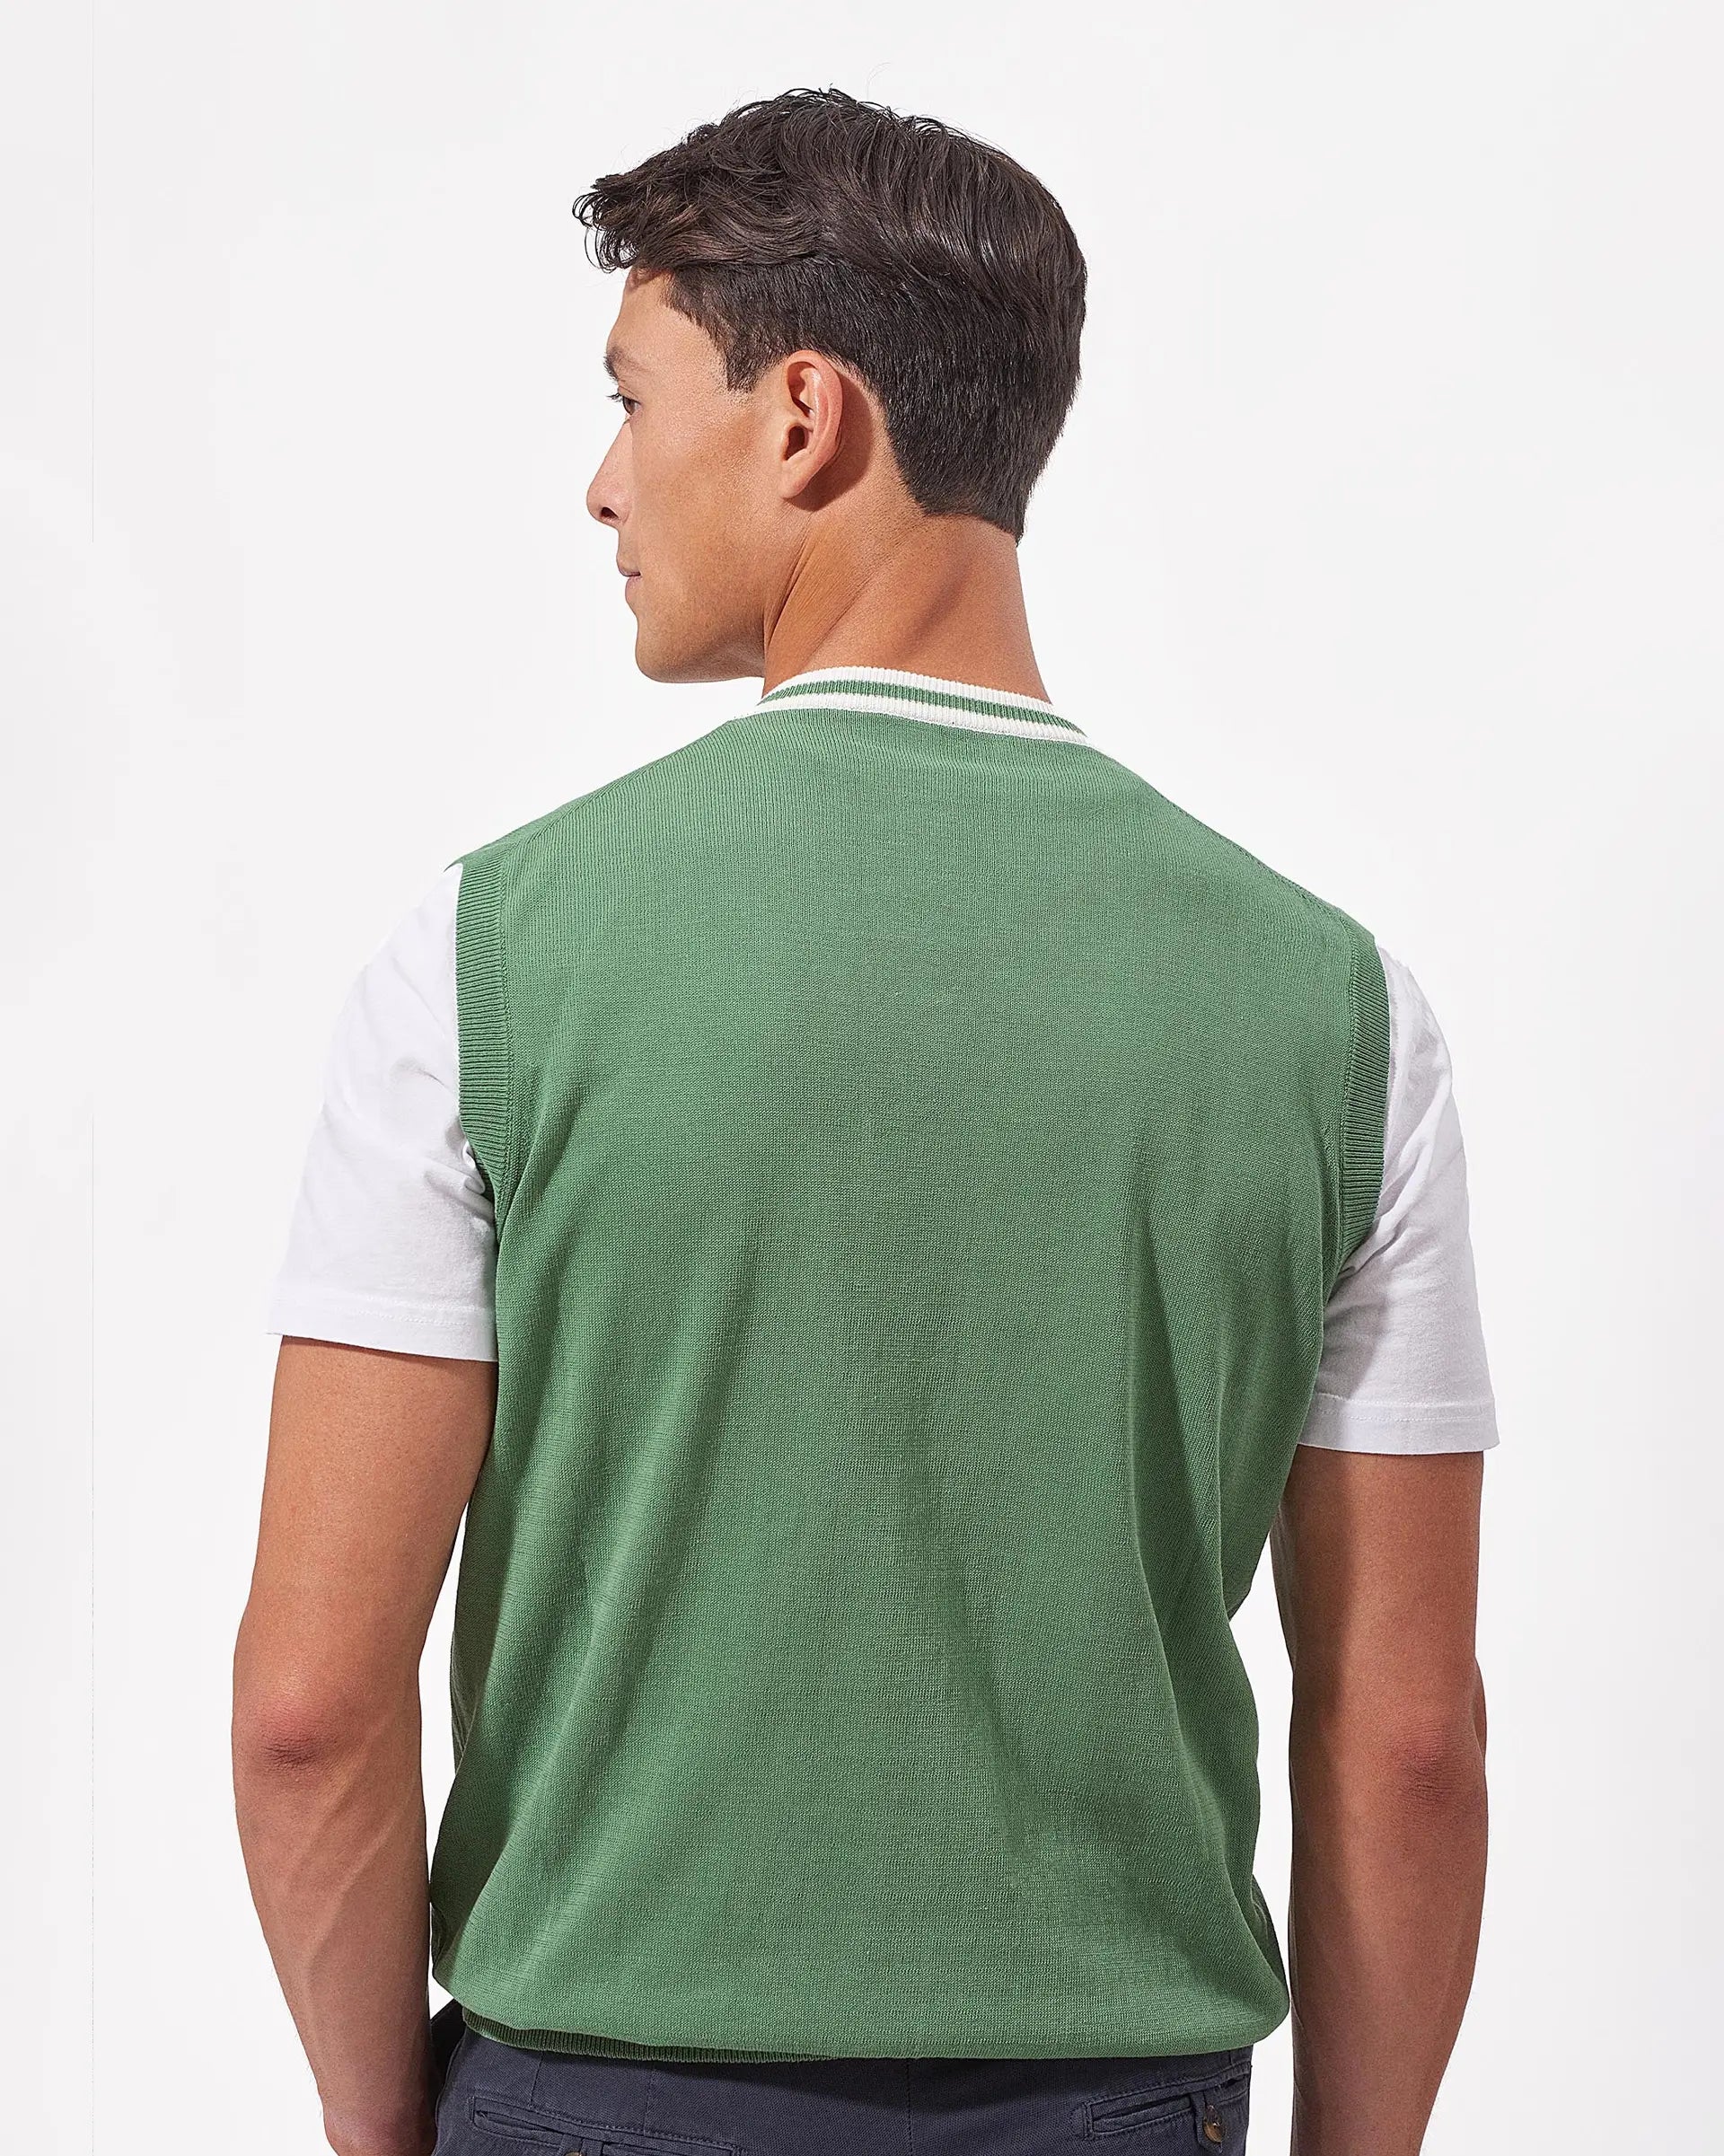 Emerald Green cotton v-neck sweater vest - 12 gauge
